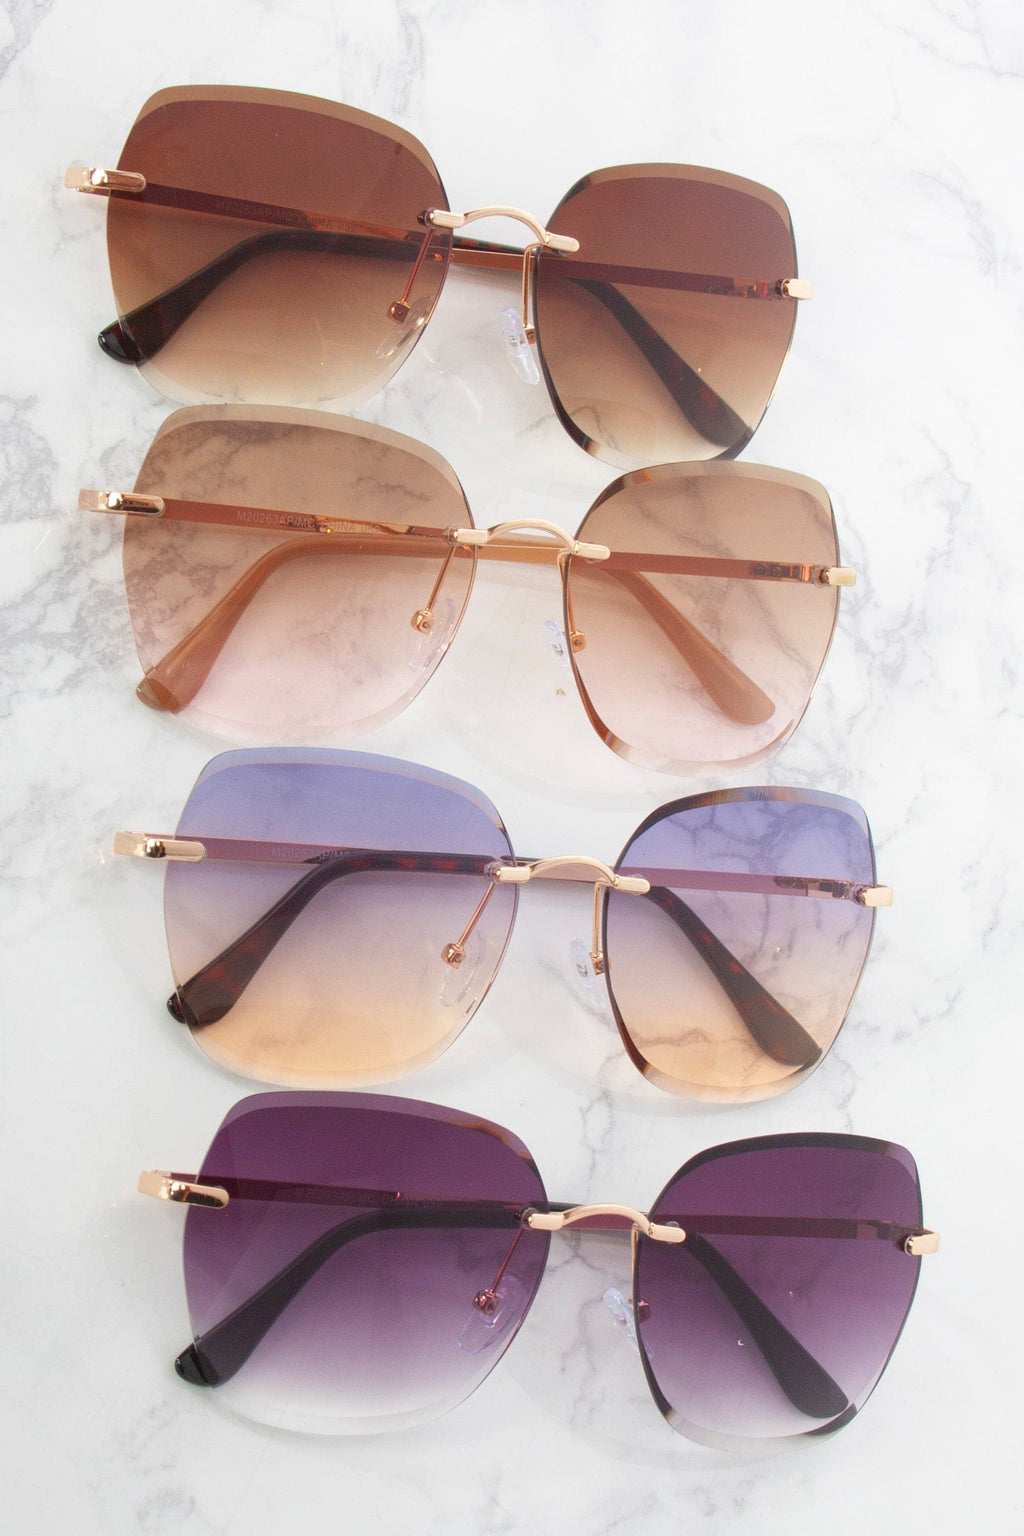 Fashion Sunglasses - M20263AP/MC  - Pack of 12 ($60 per Dozen)